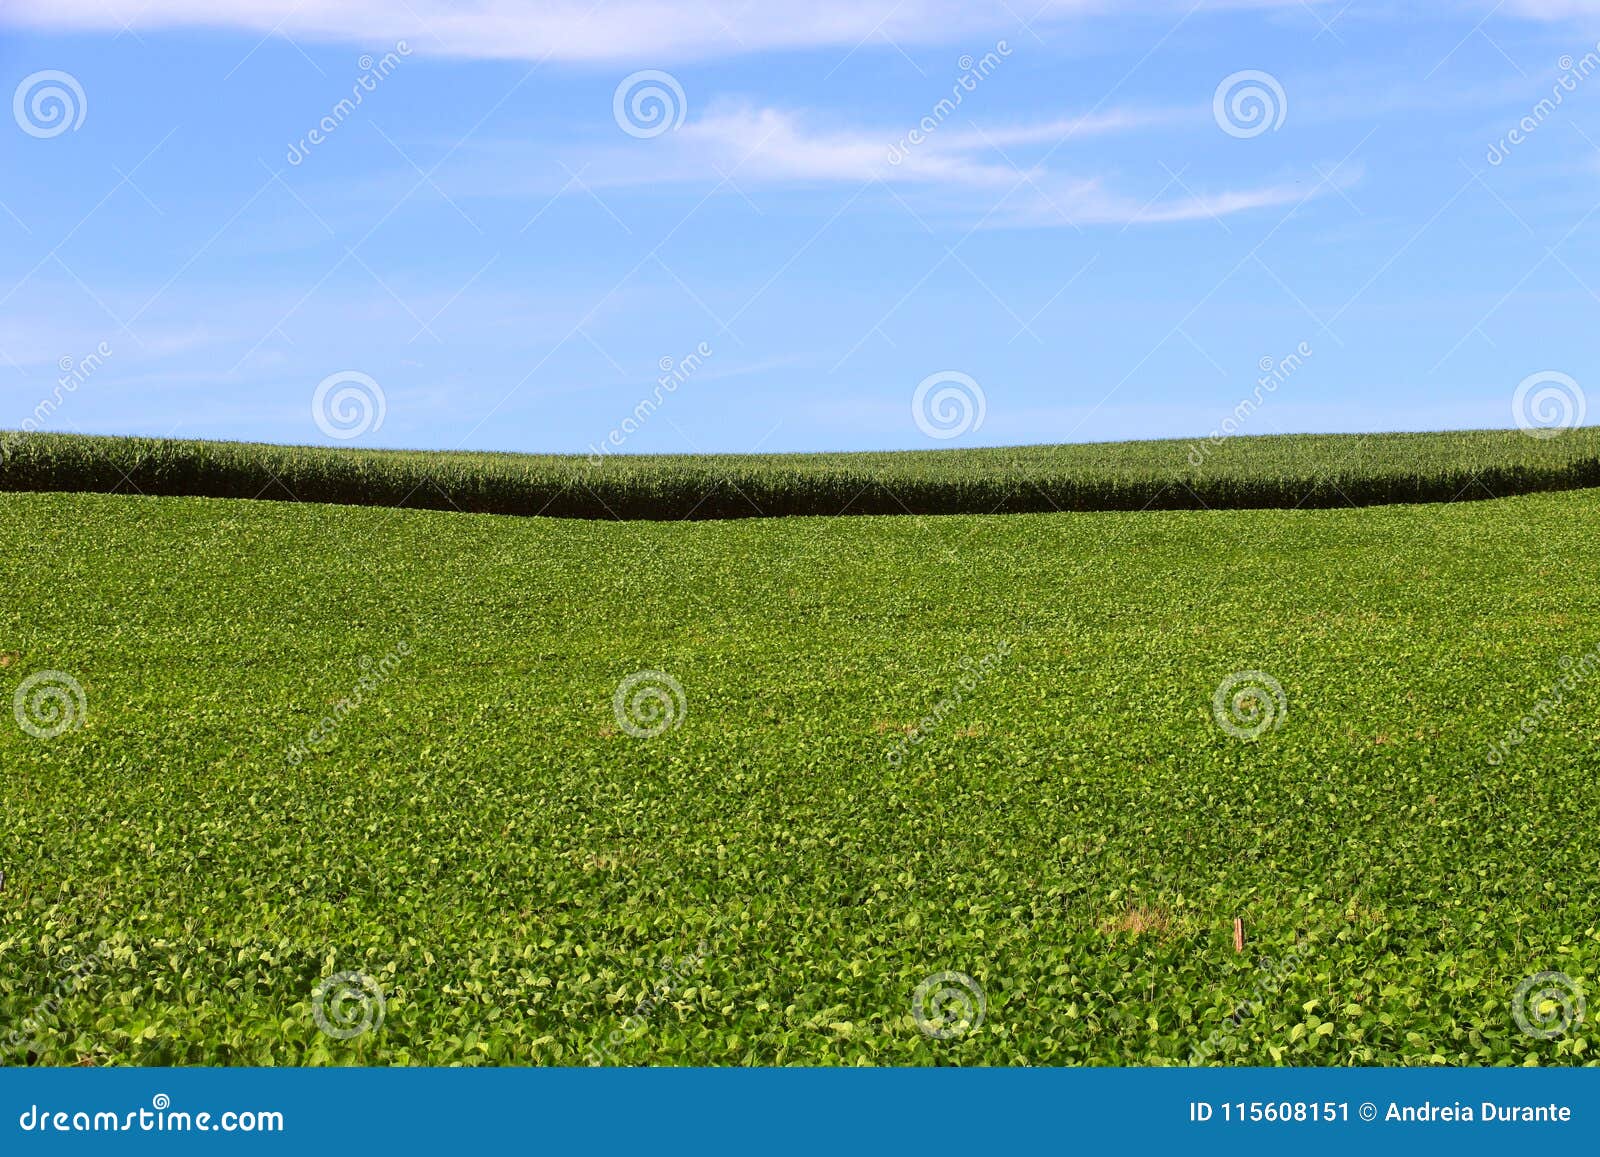 Coltivazione del cereale e della soia nel sud del Brasile Bei campi verdi che crescono parallelamente con il cielo blu come fondo Agricoltura che genera soldi ed occupazione per l'economia locale Miglioramento rurale con tecnologia avanzata